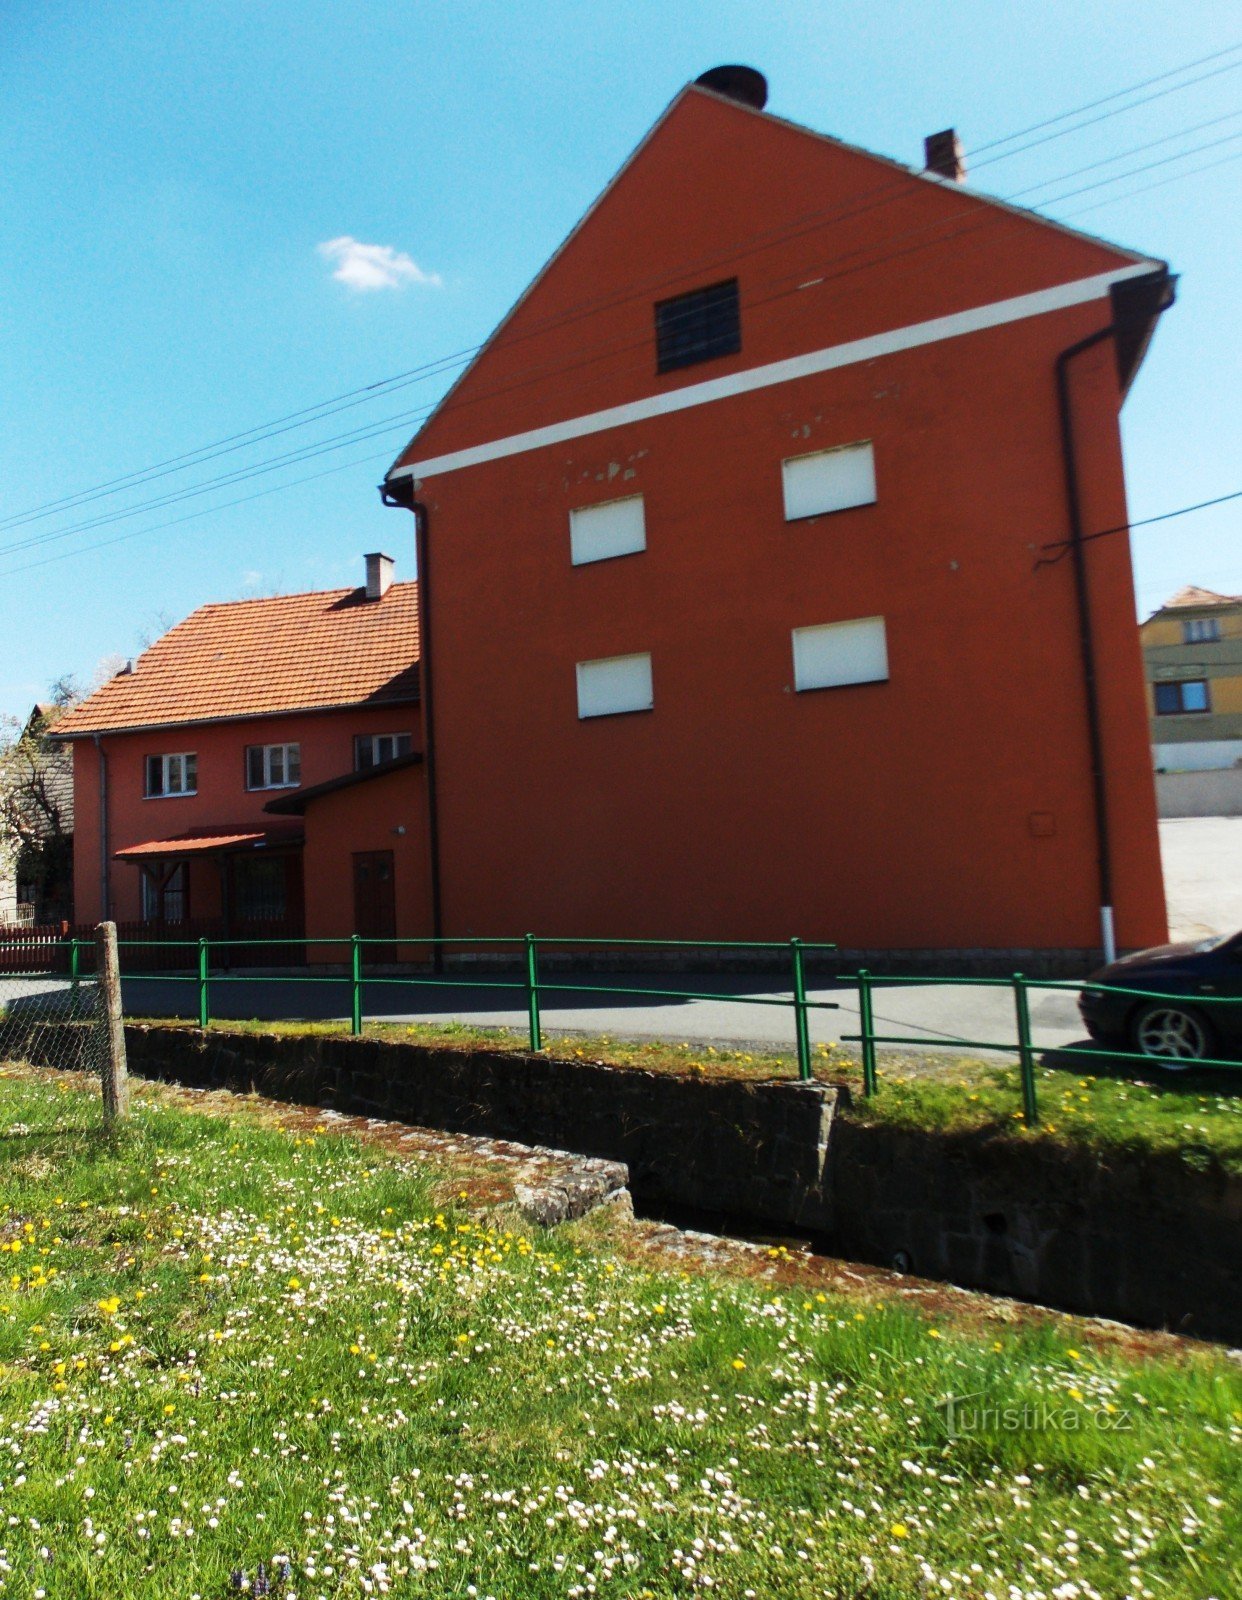 Povijesni mlin na valjke u Slopnéu